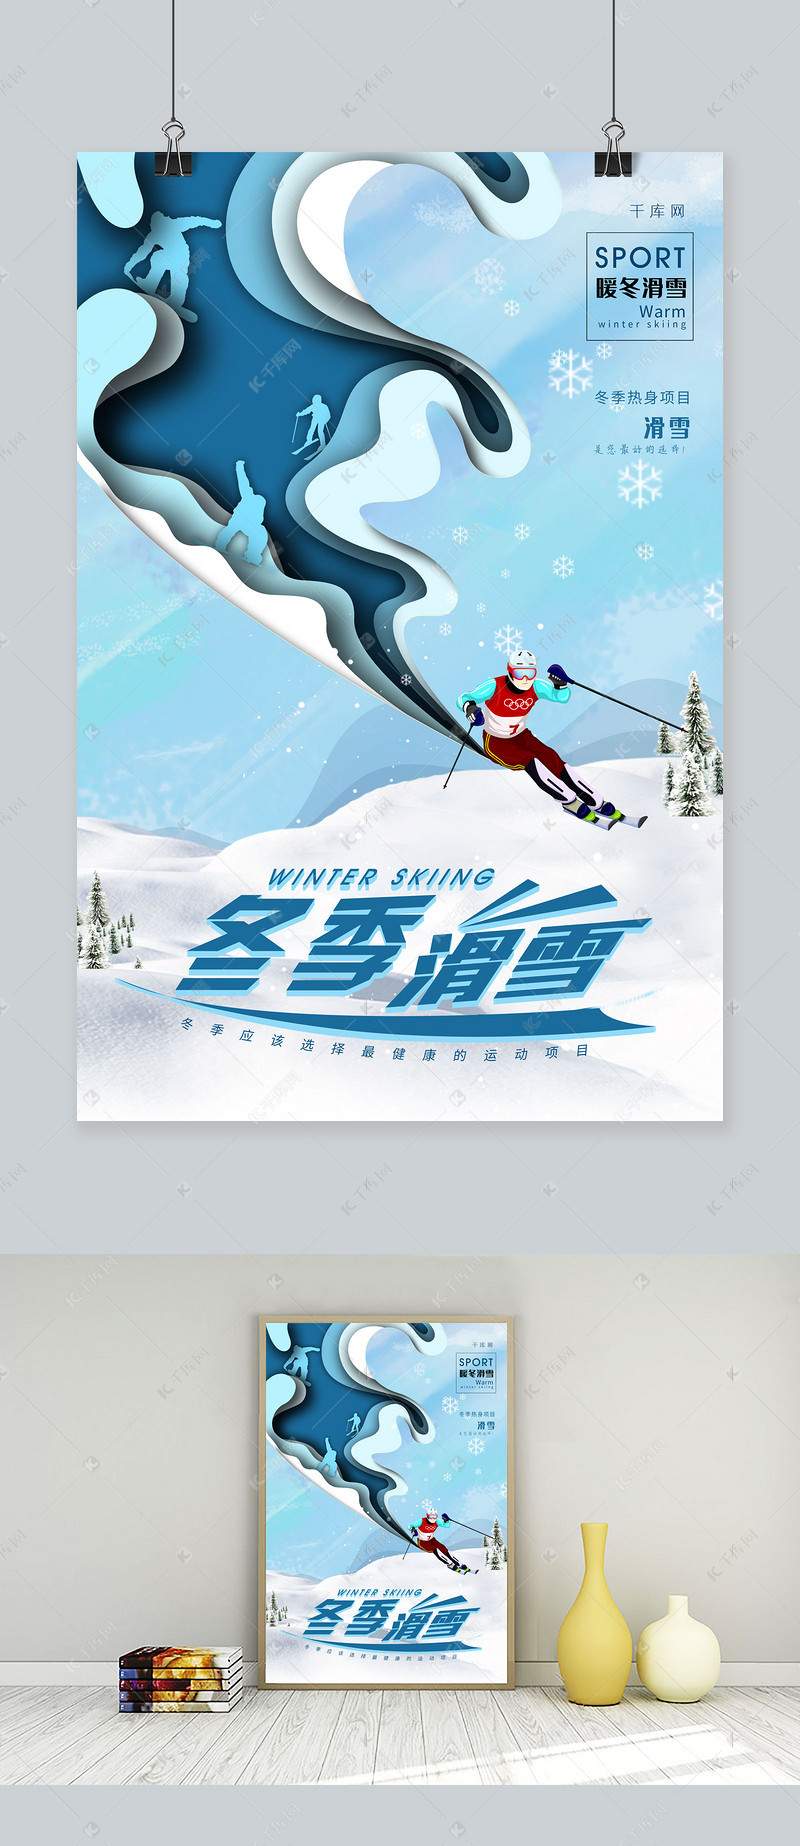 浅色创意剪纸风格冬季滑雪运动海报